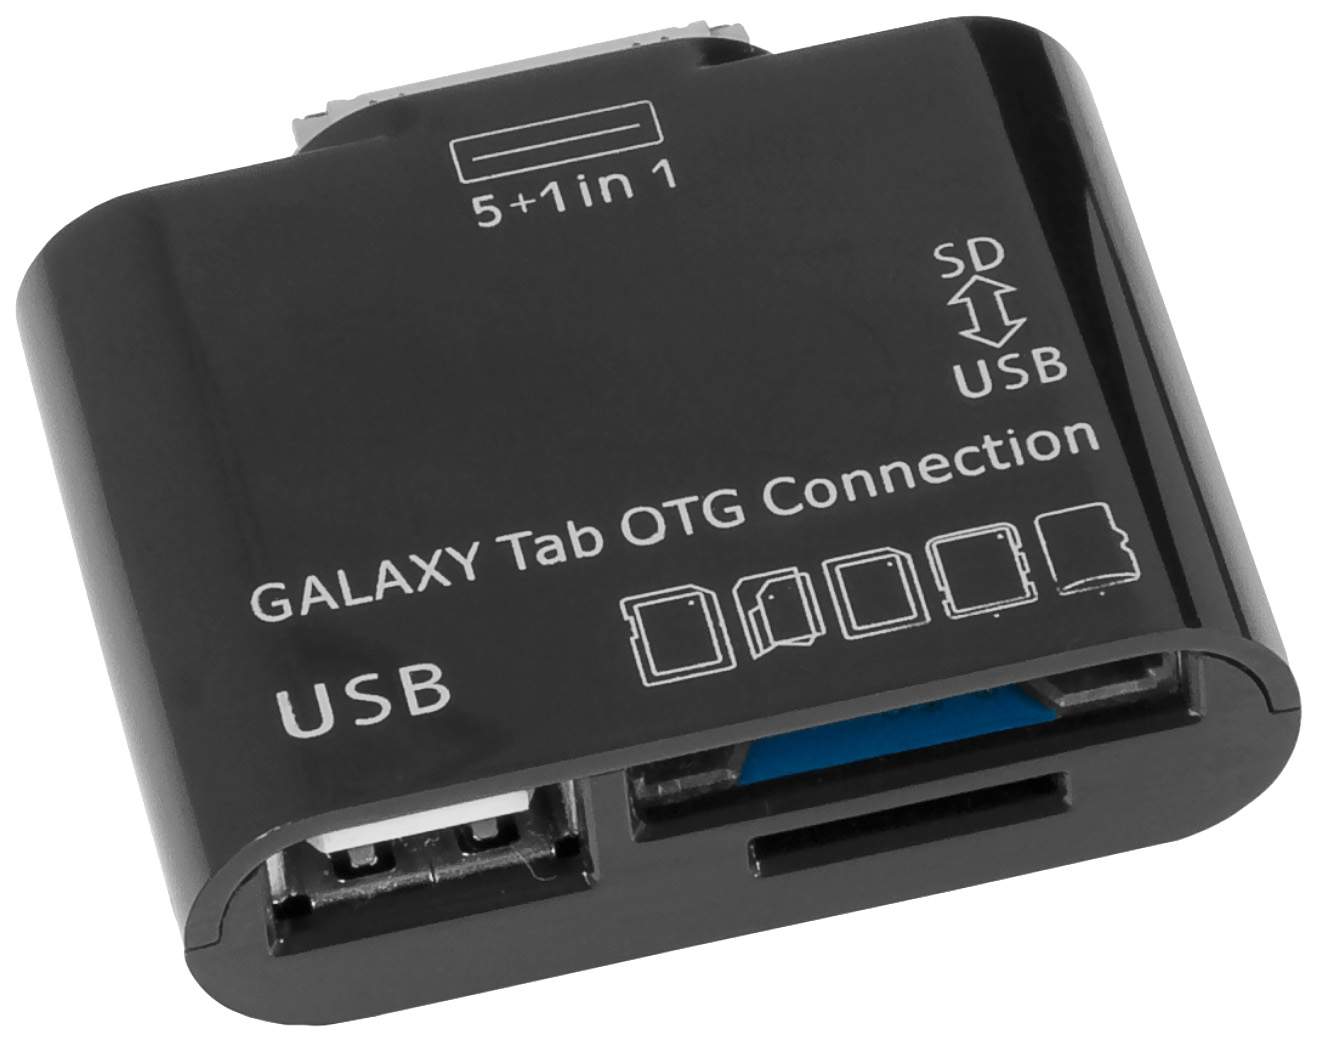 Переходник для сд. Переходник с микро SD на USB флешку. *Defender картридер Sam-Kit Samsung Galaxy Tab OTG connection MICROSD-TF, SD-MMC, порт USB af 87655. Картридер переходник MICROSD на SD. Переходник для планшета tab2 USB OTG.